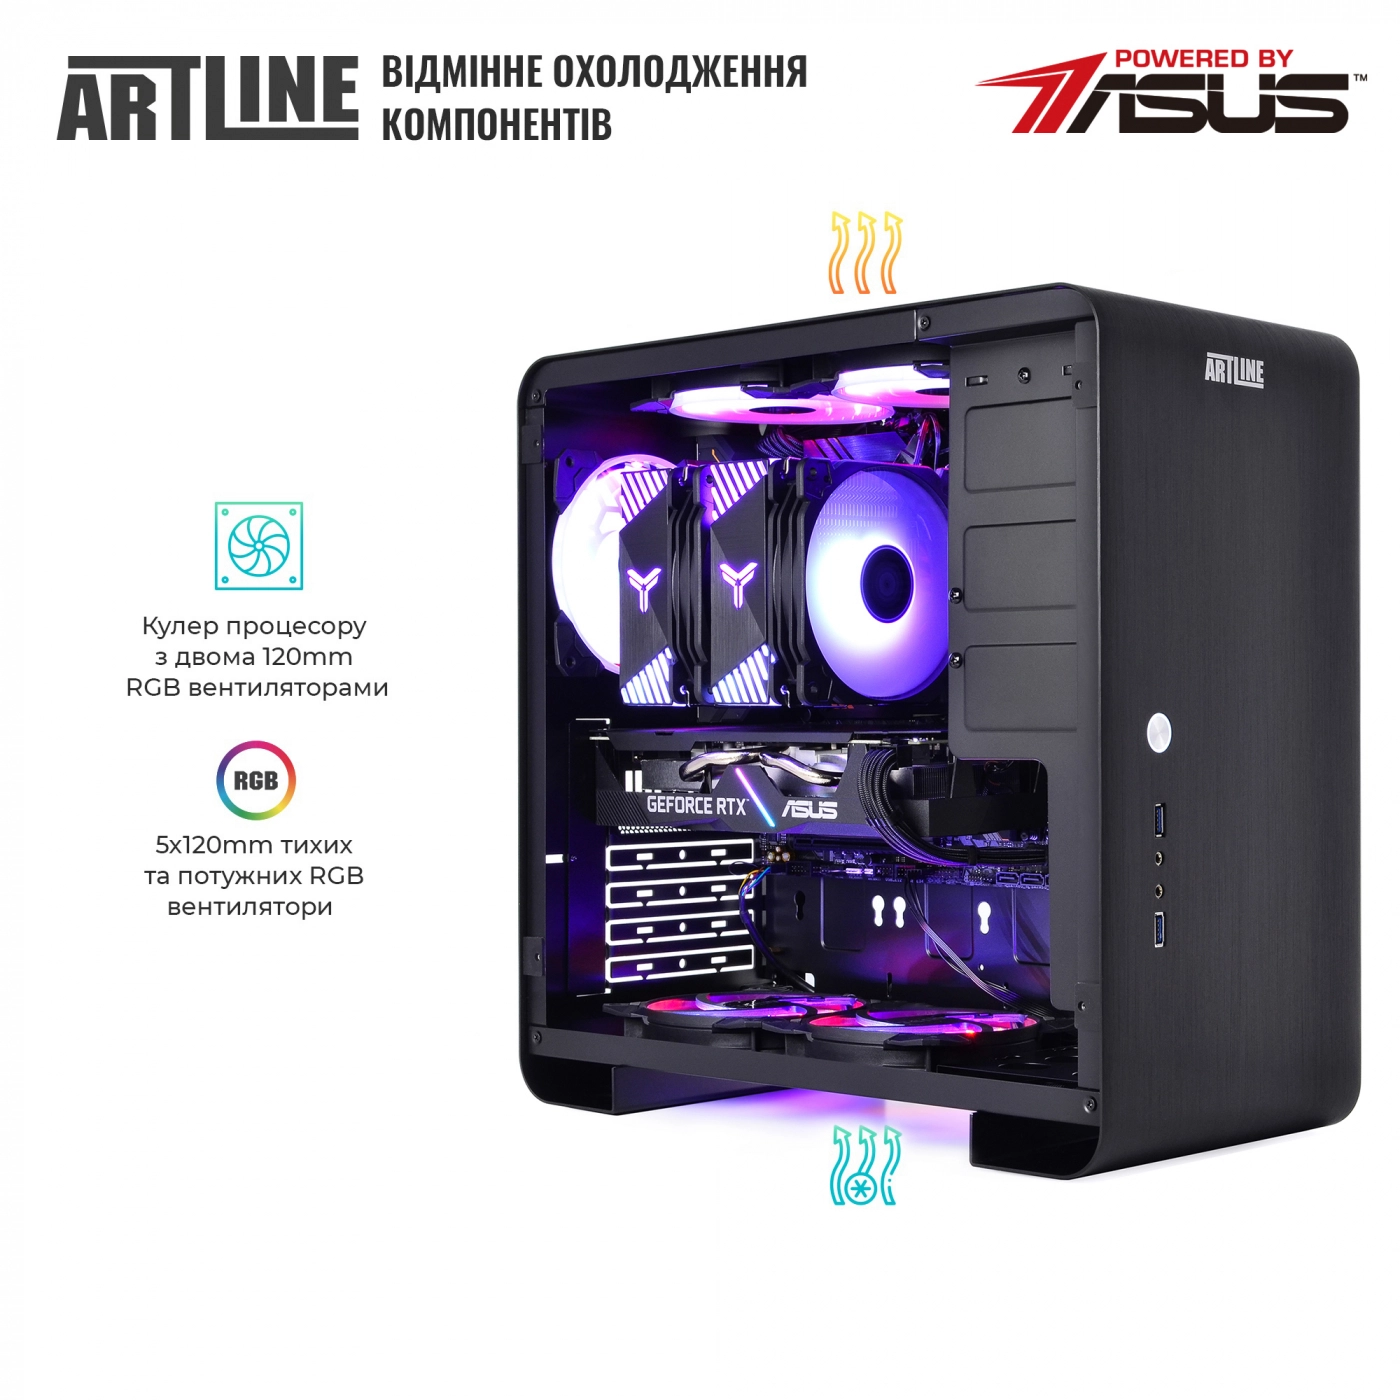 Купить Компьютер ARTLINE Gaming X75v32 - фото 6